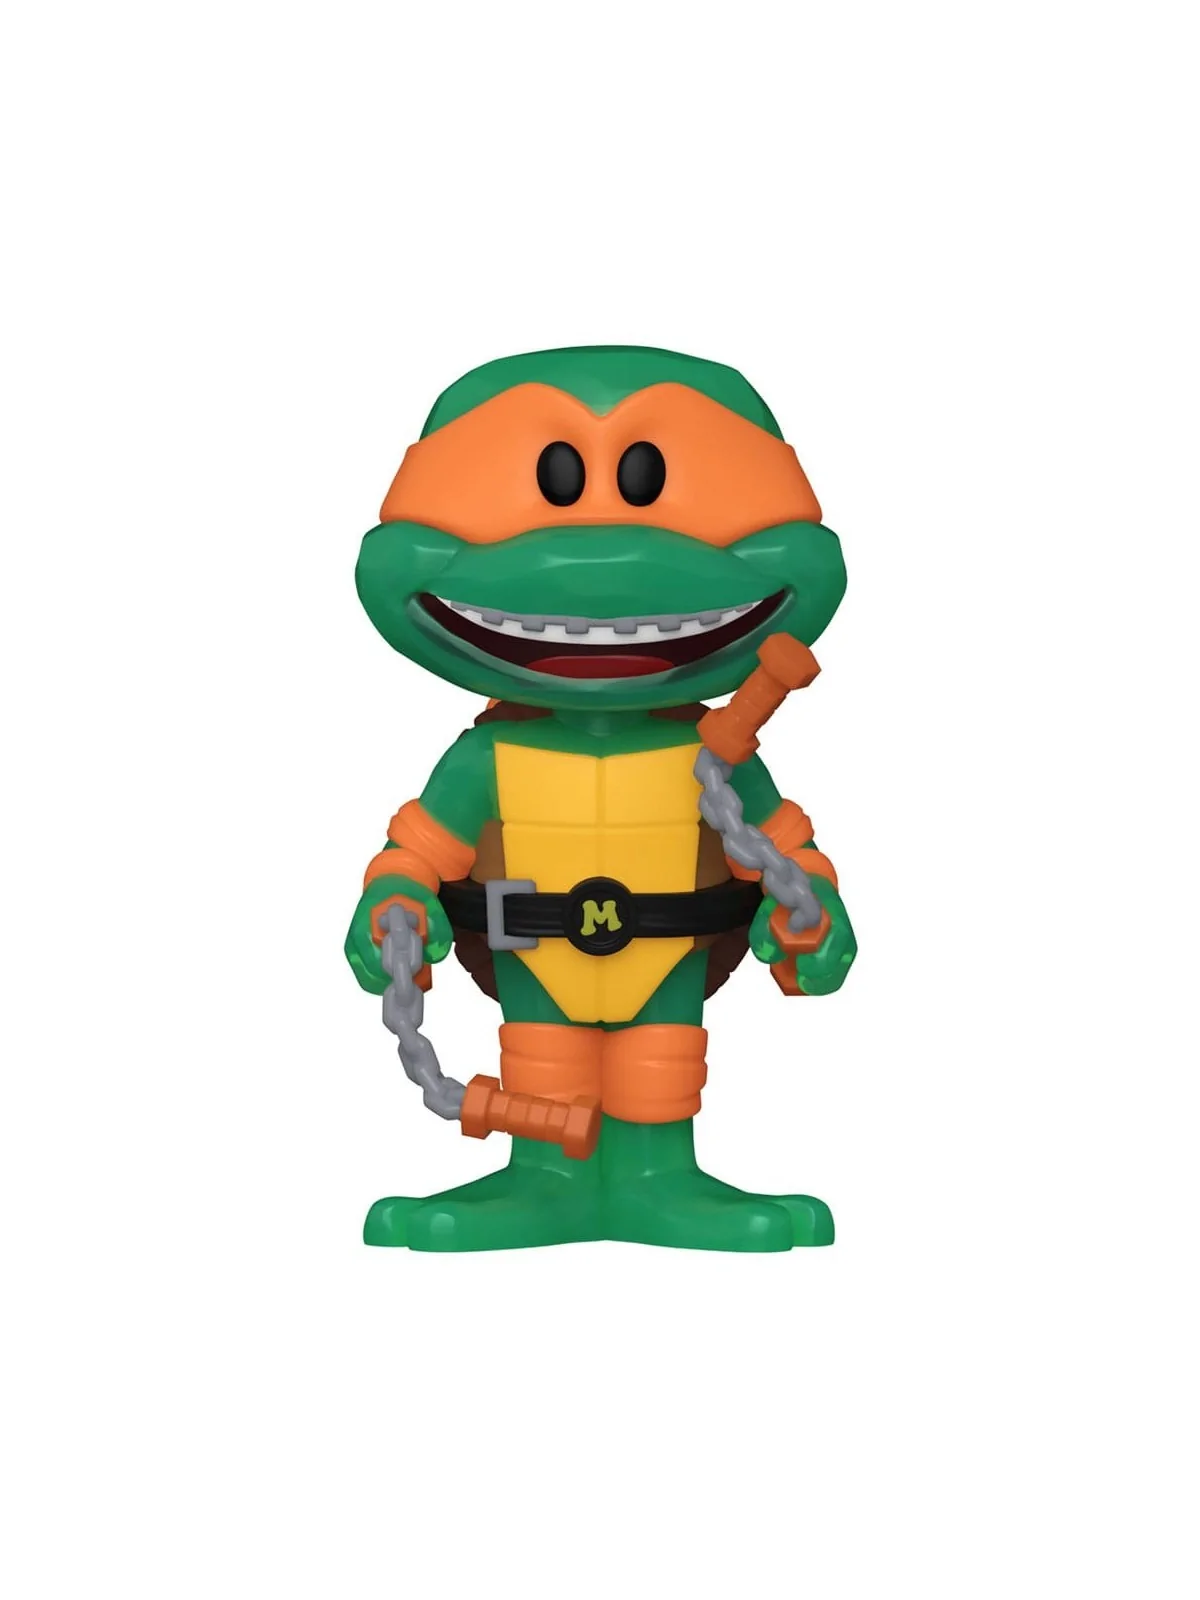 Comprar Funko Soda: Tortugas Ninja - Michelangelo barato al mejor prec